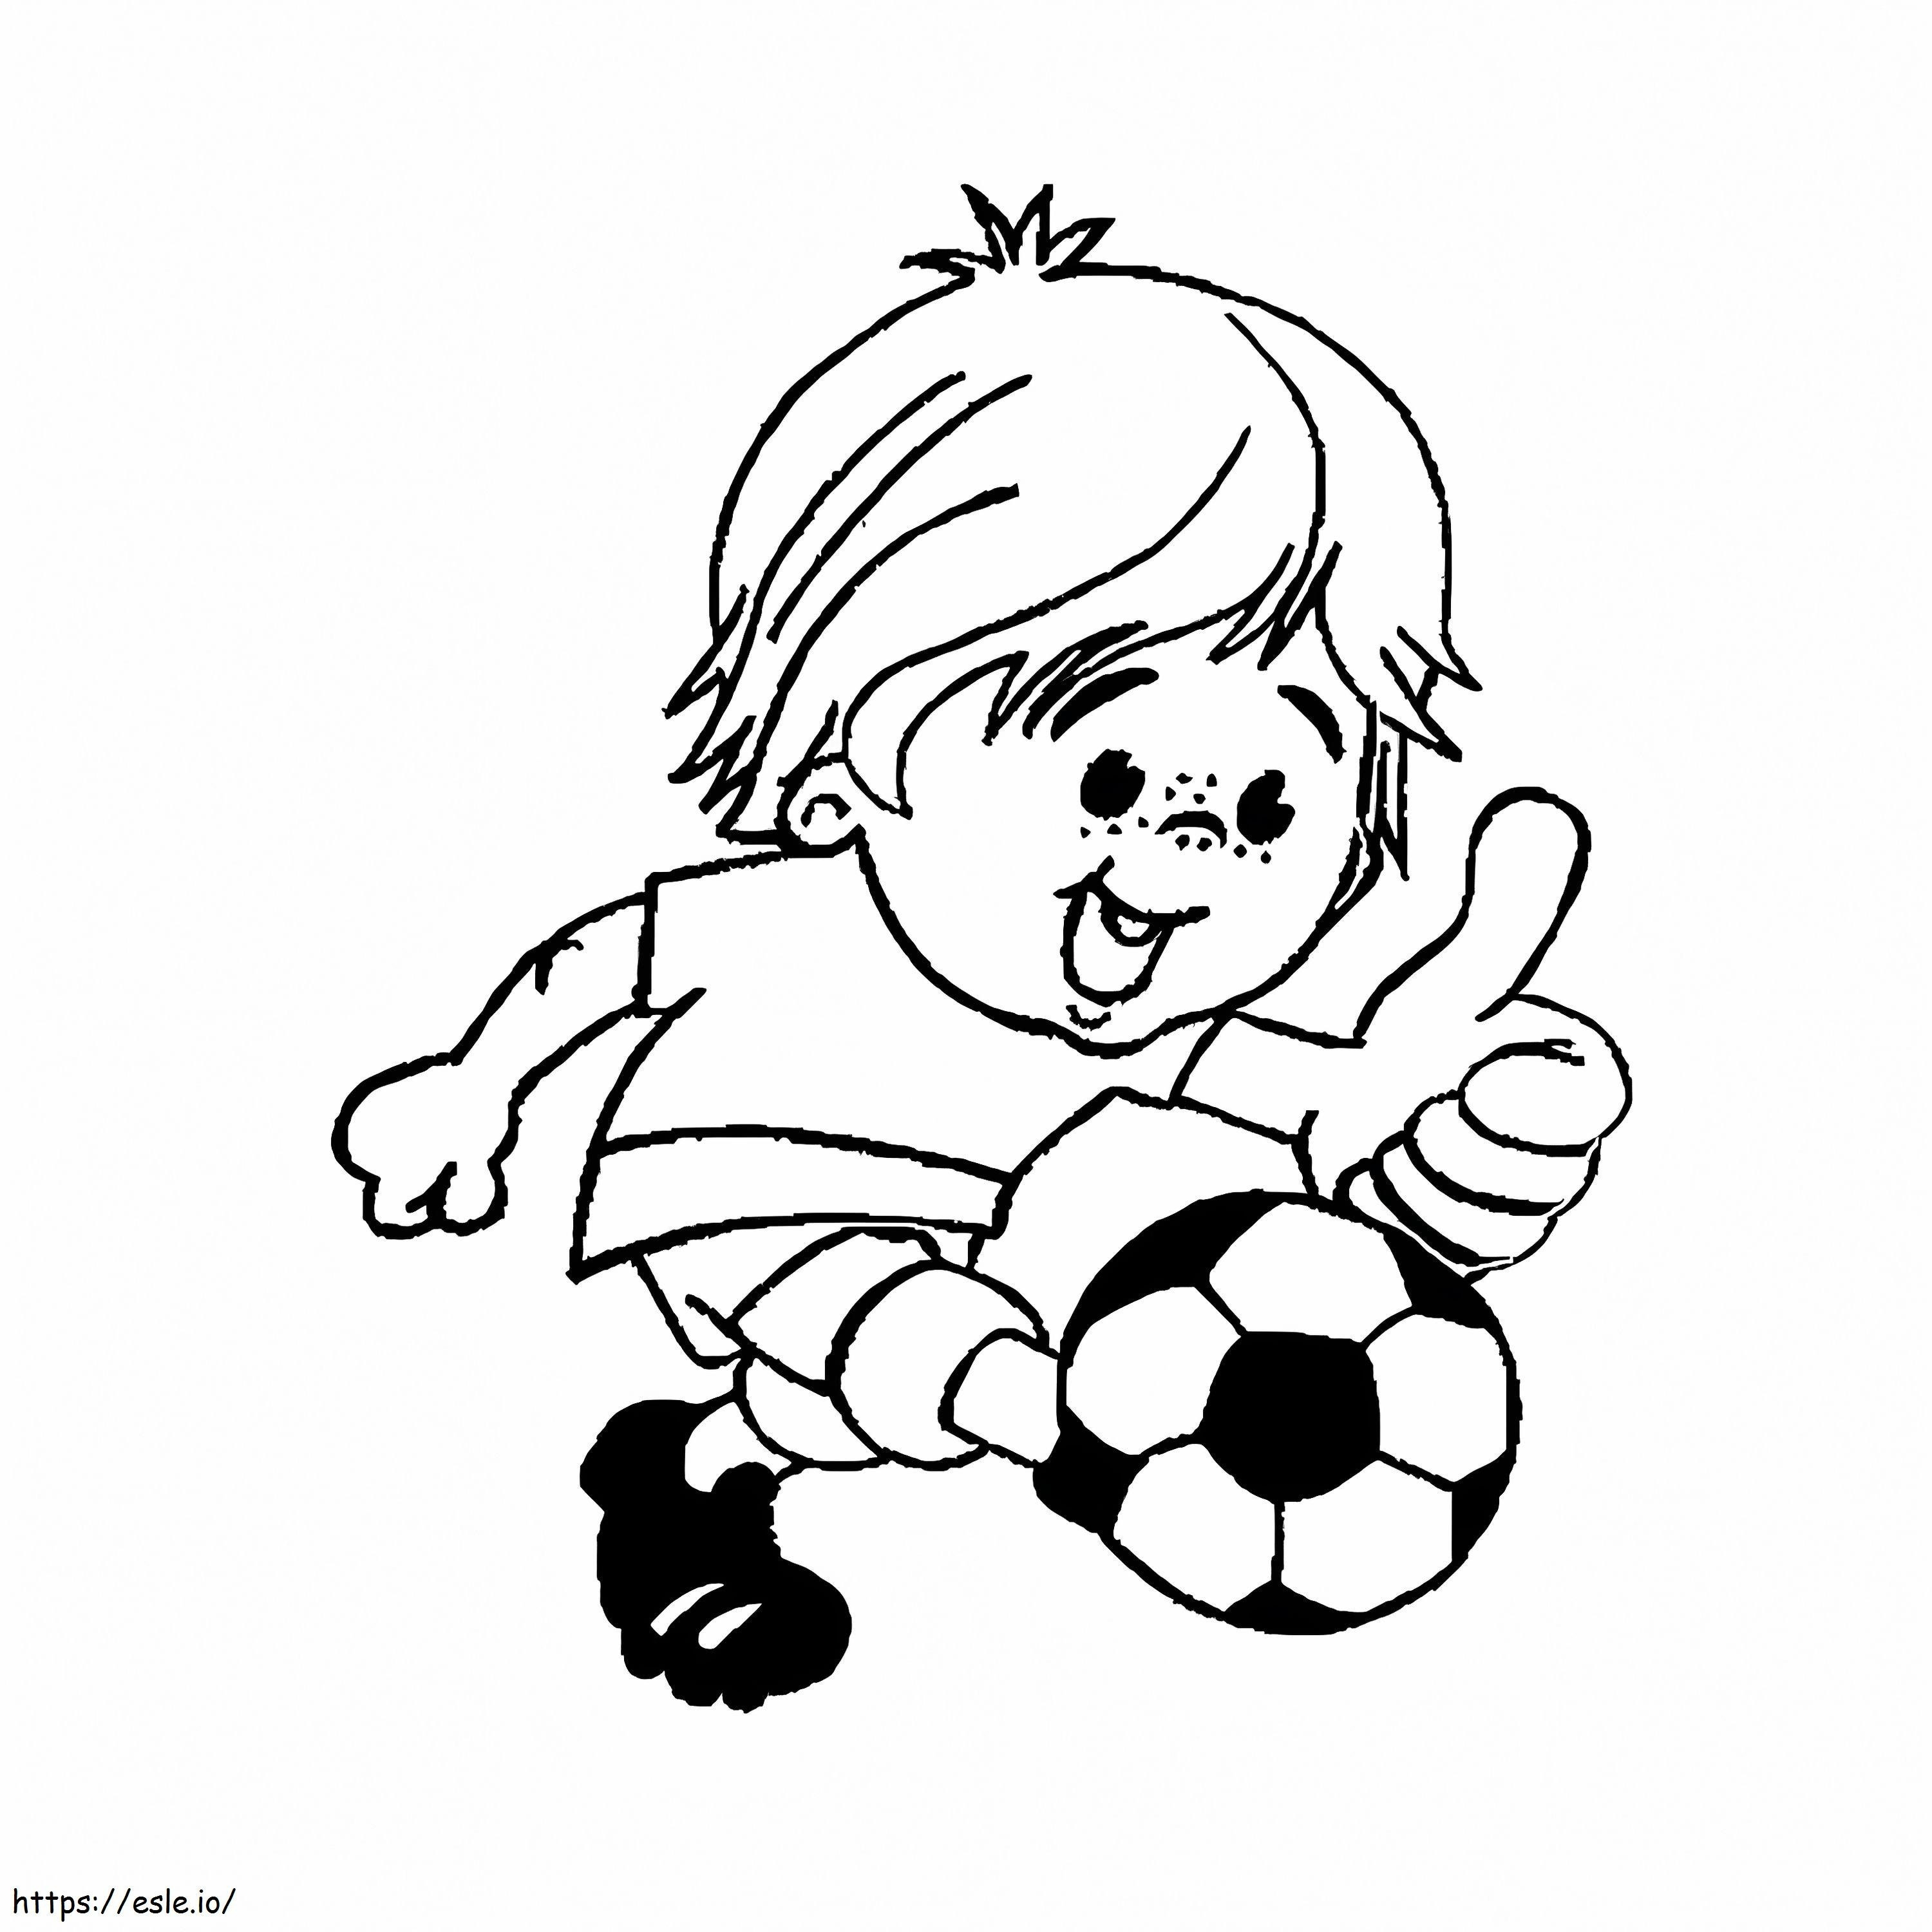 Niño jugando al fútbol para colorear